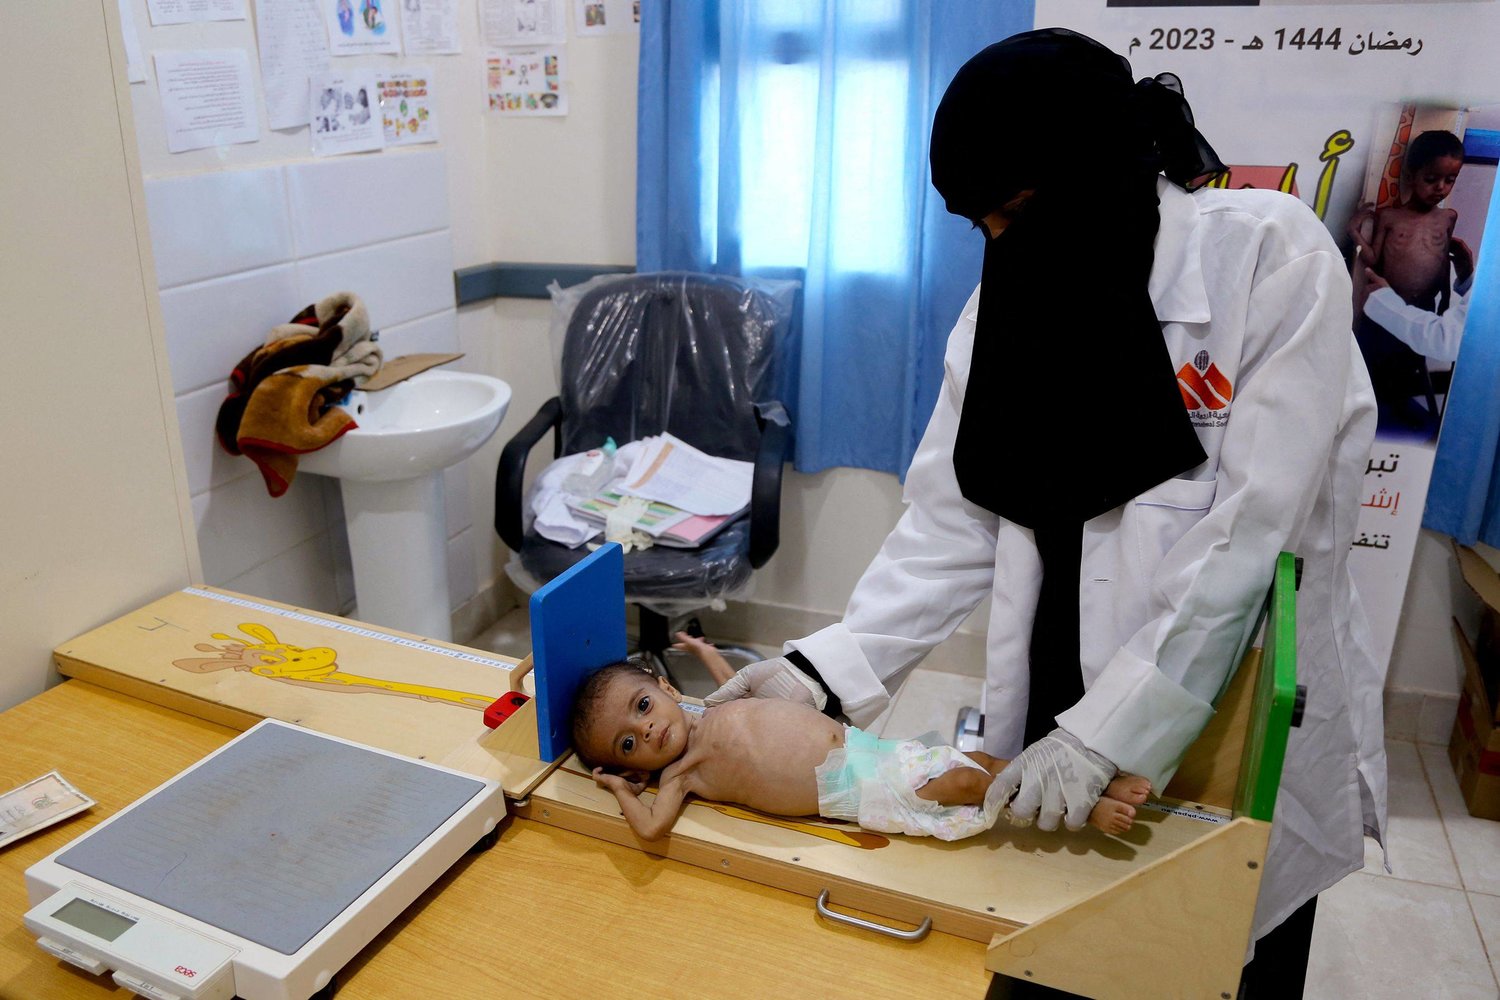  منحة بريطانية بقيمة 25 مليون جنيه إسترليني لتحسين صحة النساء والأطفال في اليمن